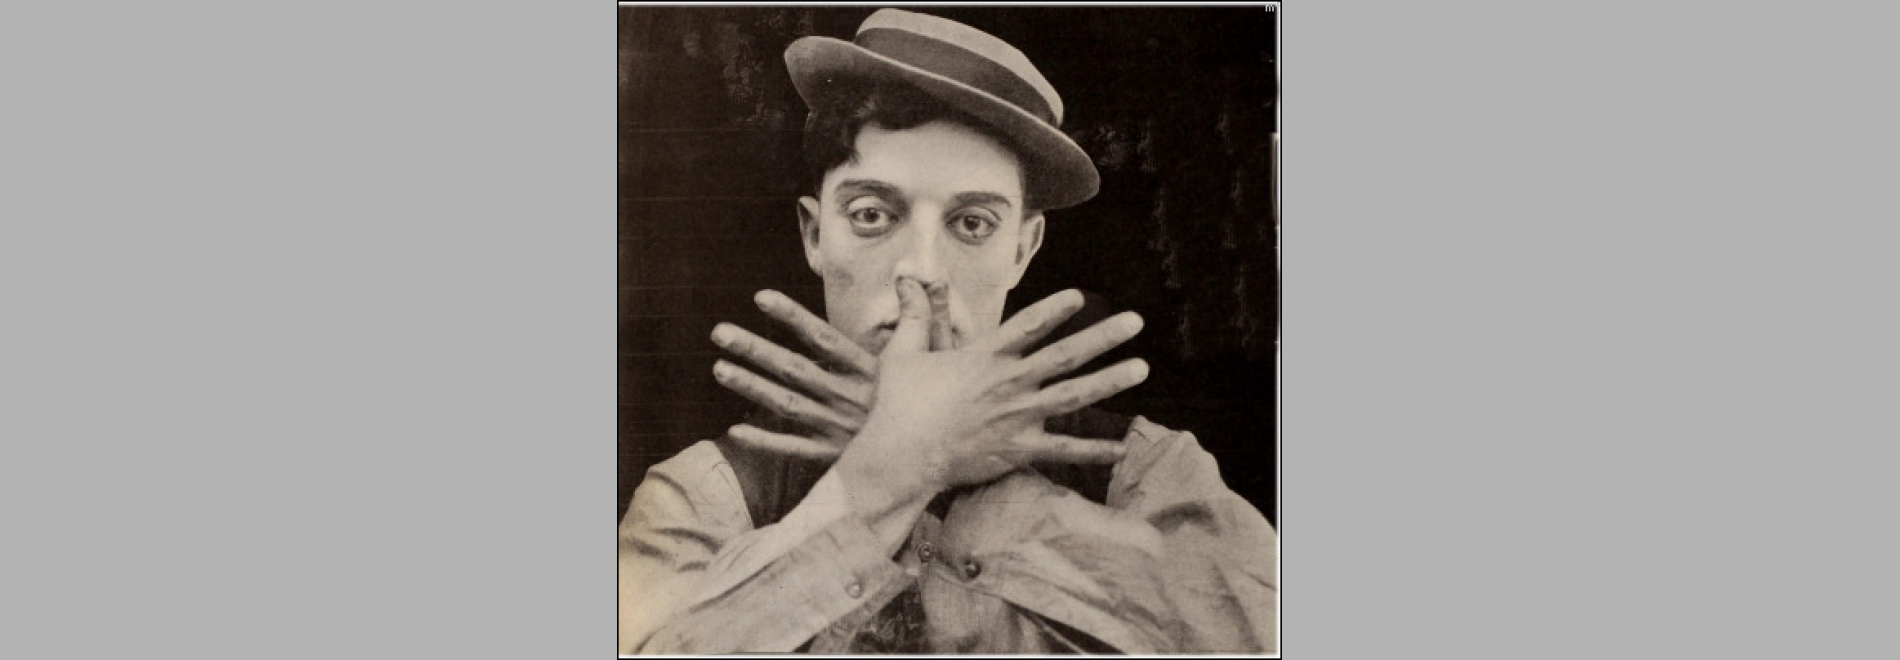 The High Sign / El guardaespaldas (Buster Keaton, 1920)